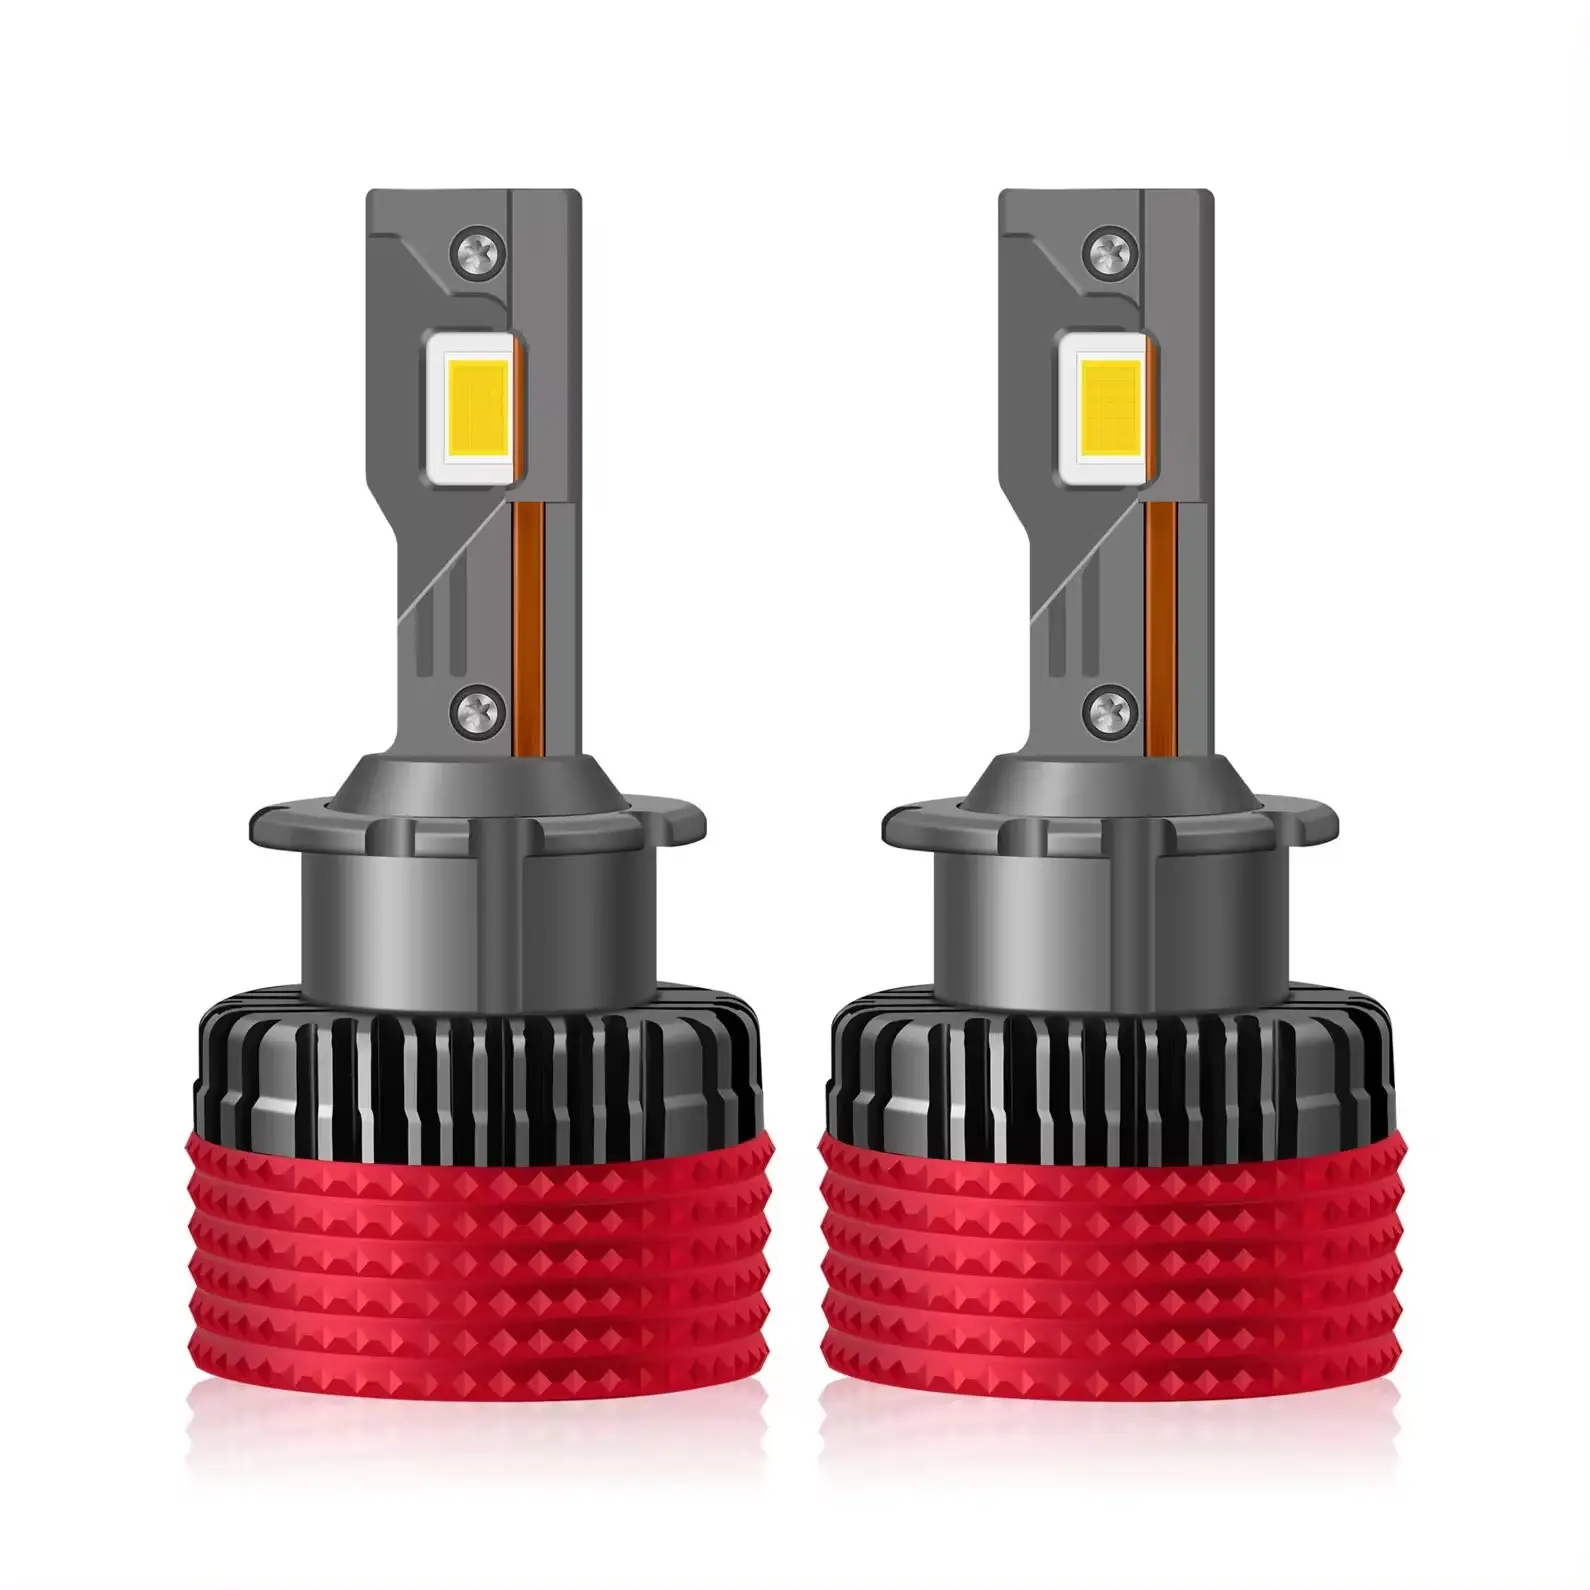 Accessori Auto ad alta potenza serie D Canbus luci Led D2s Plug & Play Design lampadine a LED per Auto